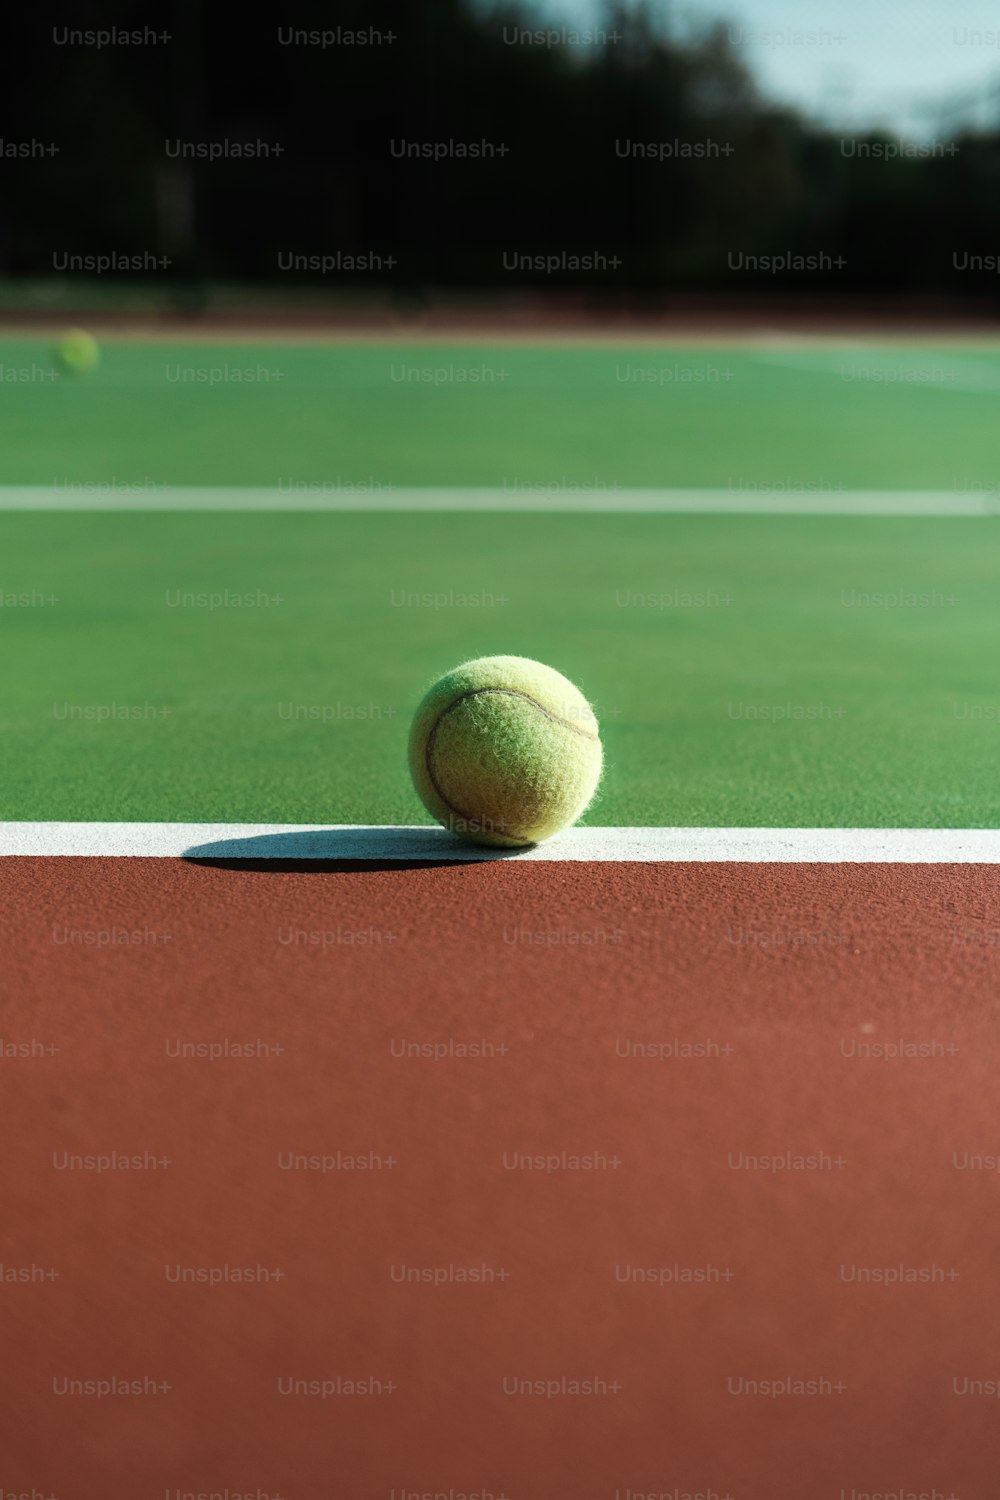 테니스 코트에 앉아 있는 테니스 공